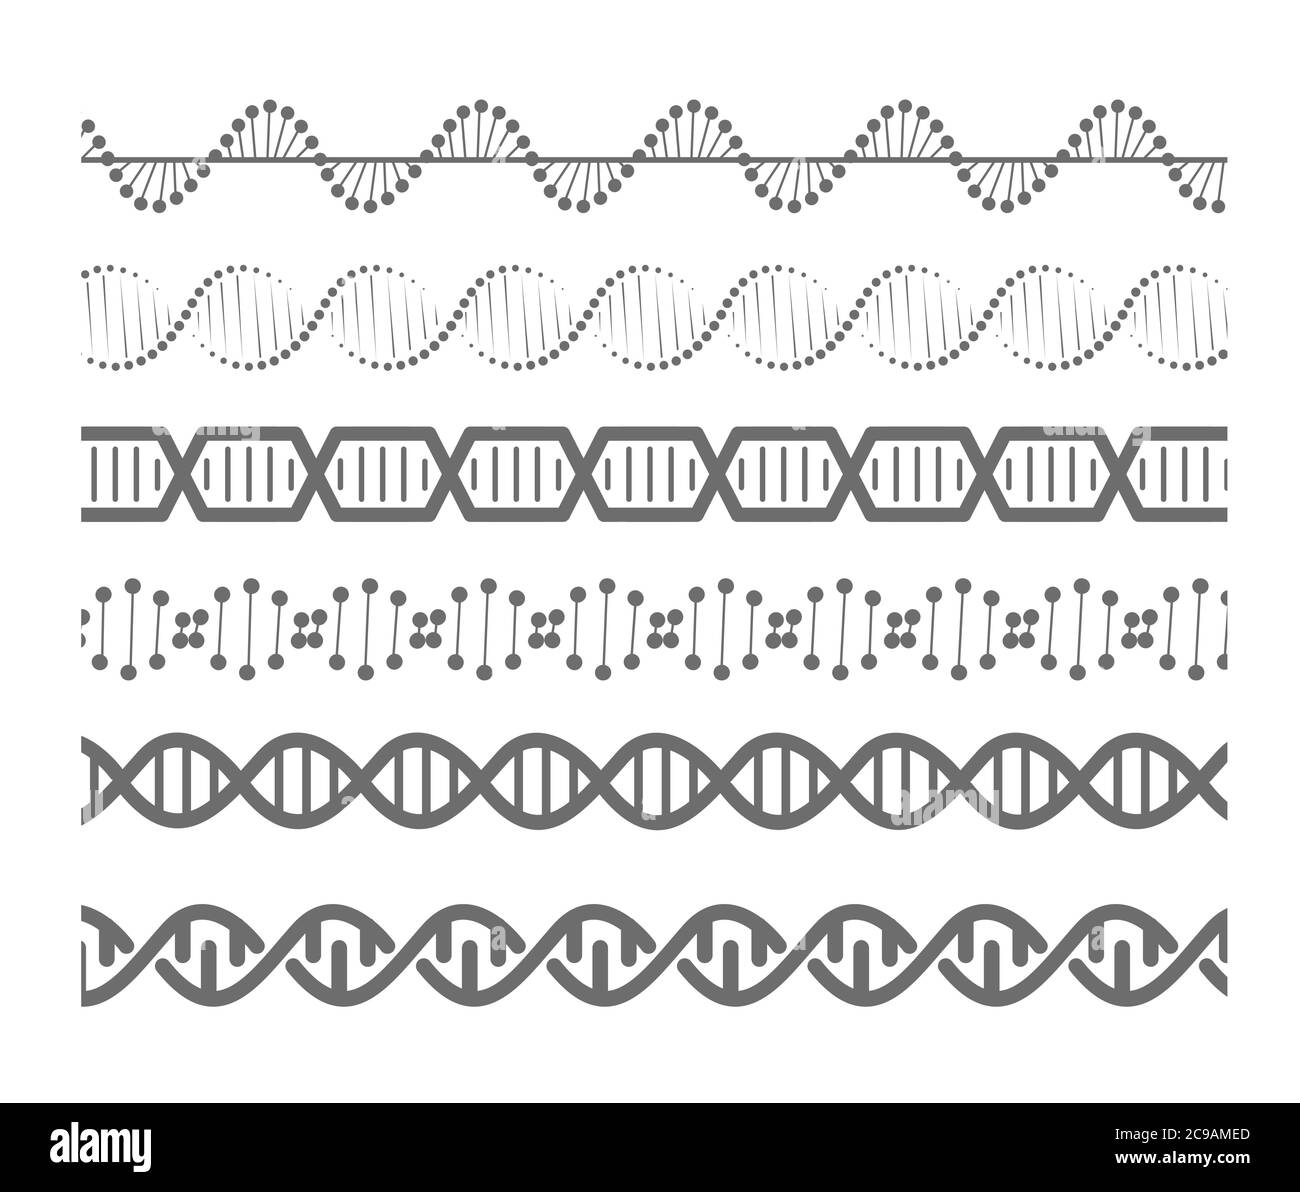 Sagome isolate delle molecole di DNA. Icone vettoriali della bio-tech medica della molecola a spirale. Illustrazione Vettoriale